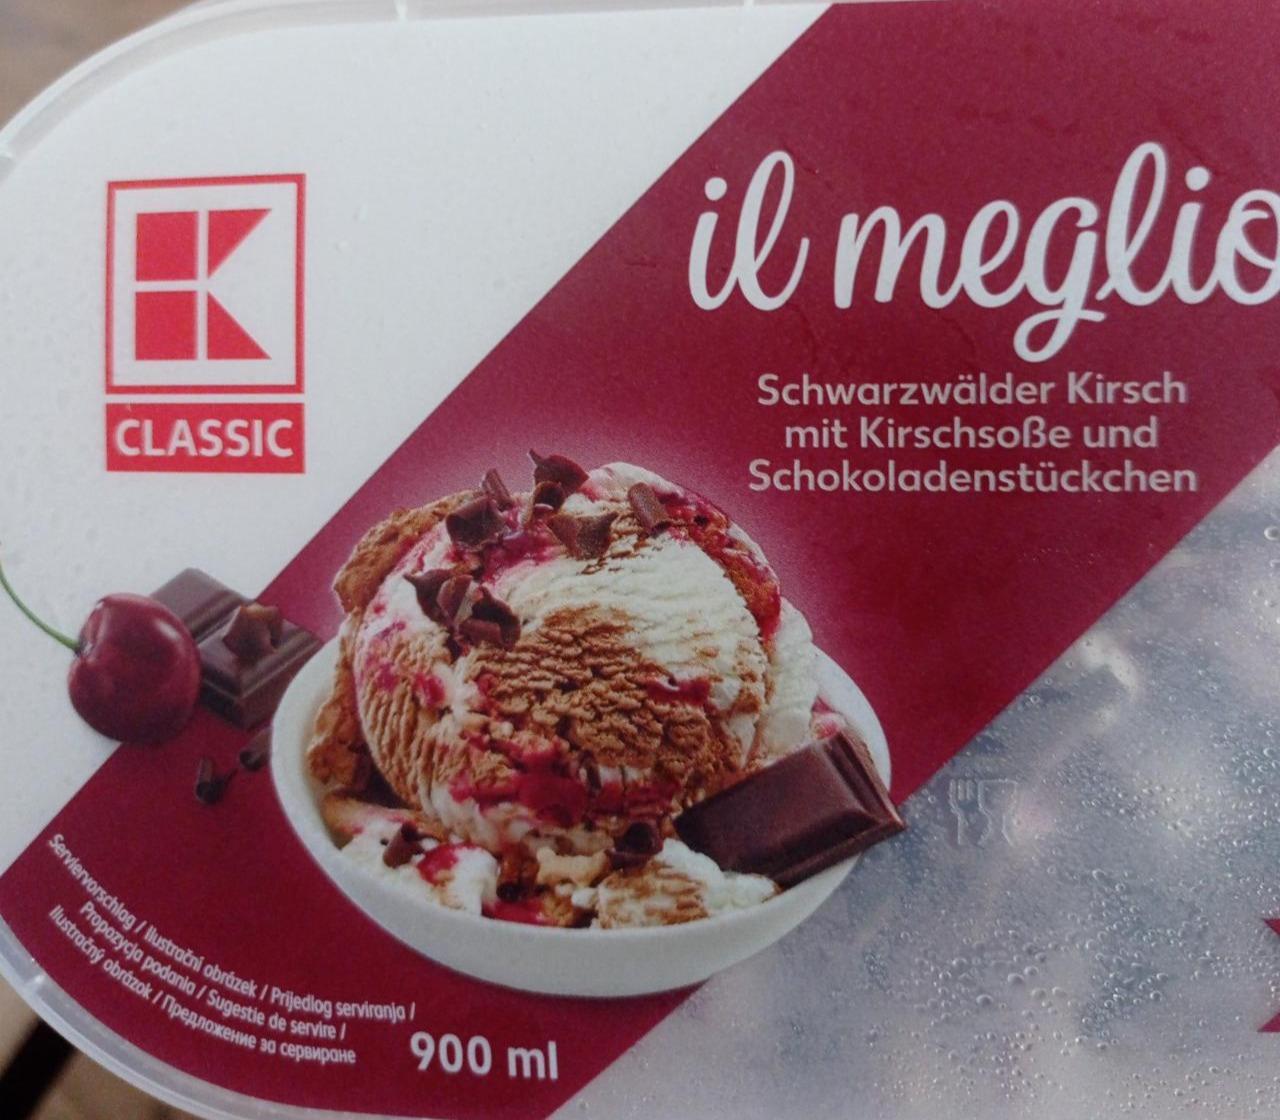 Фото - Il Meglio Schwarzwälder Kirsch mit Kirschsoße und Schokoladenstückchen K-Classic